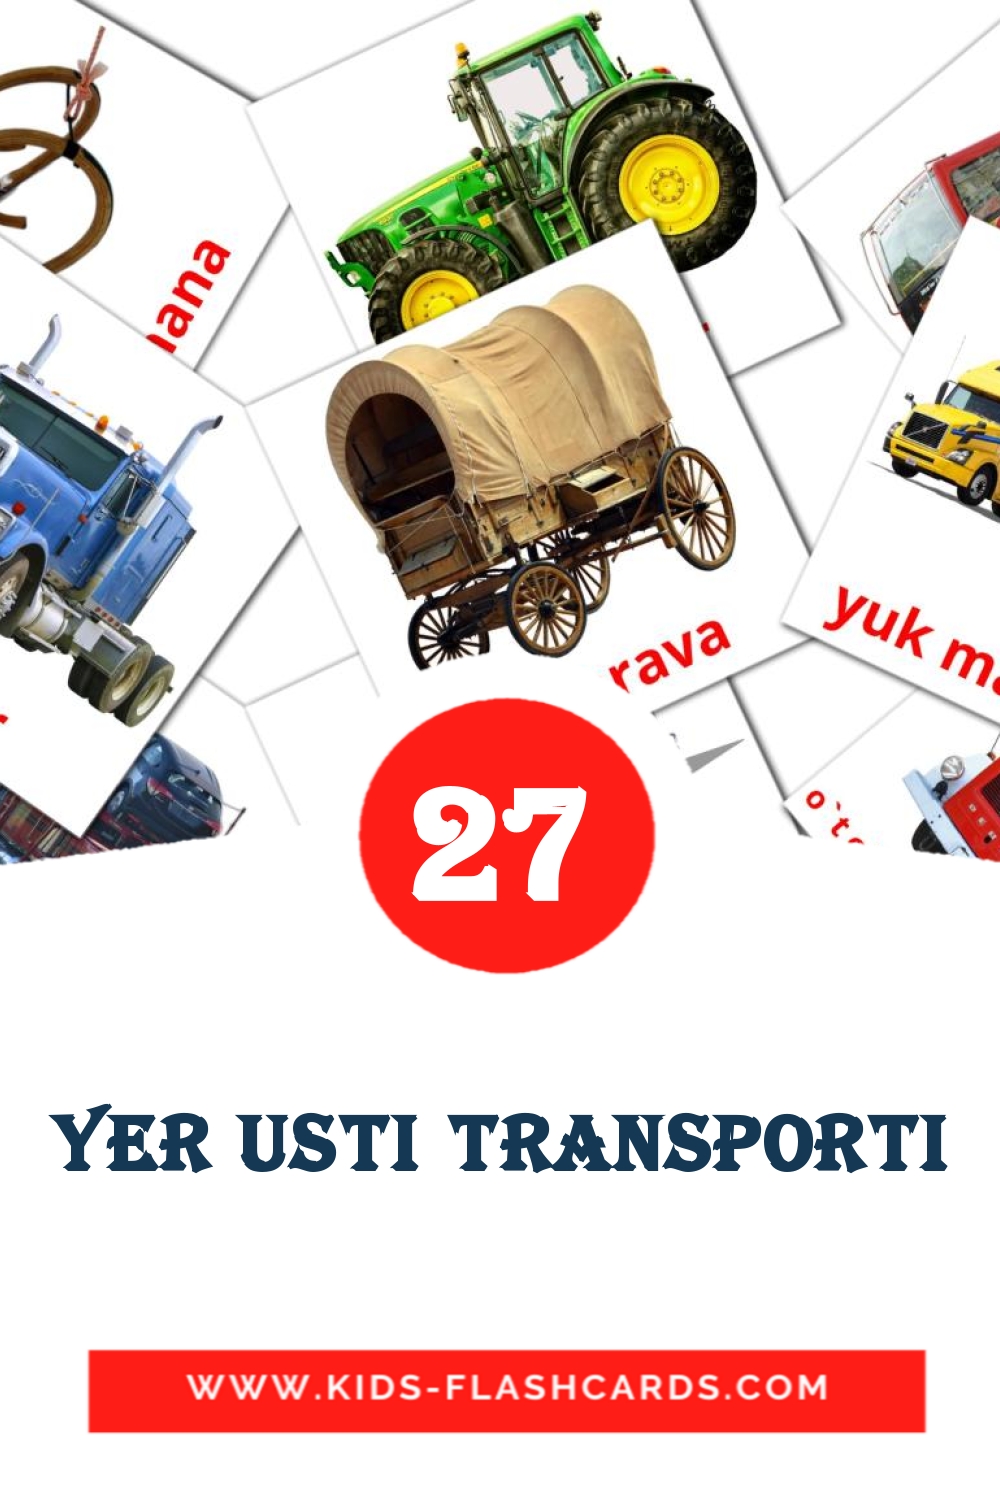 28 Yer usti transporti Picture Cards for Kindergarden in uzbek